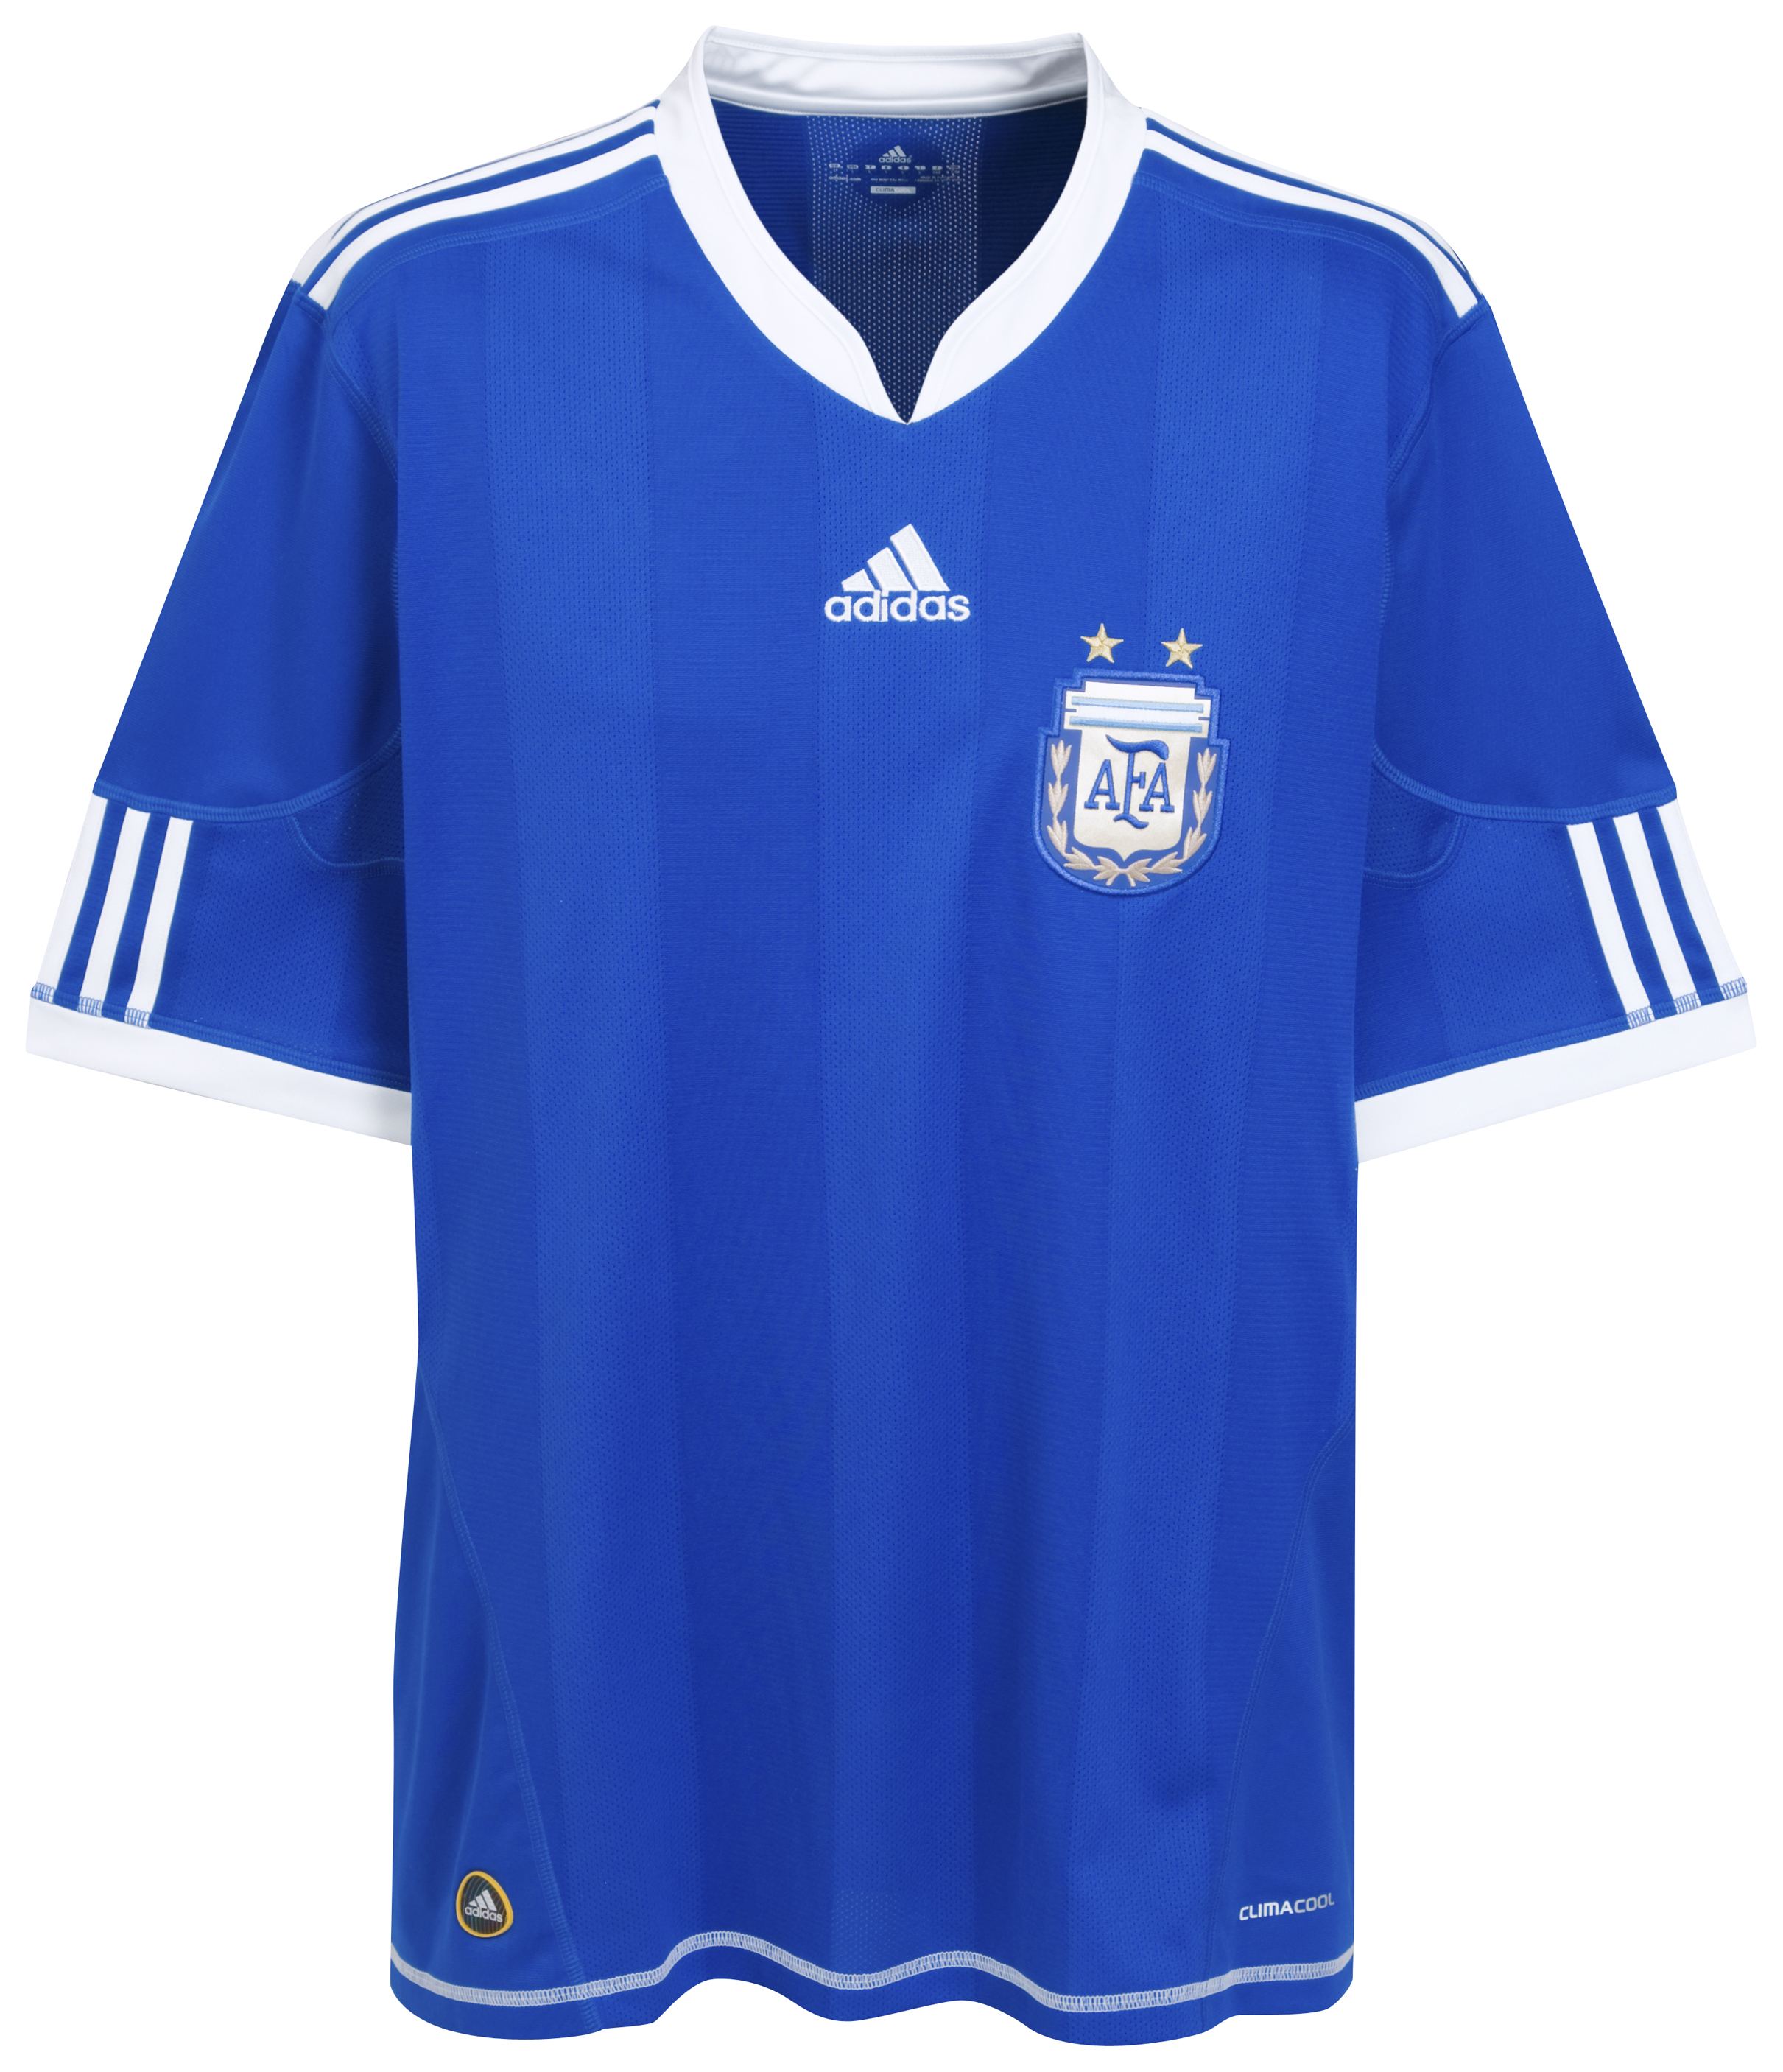 الملابس النهائيه لكأس العالم (2010)بجنوب افريقيا Kb-66925